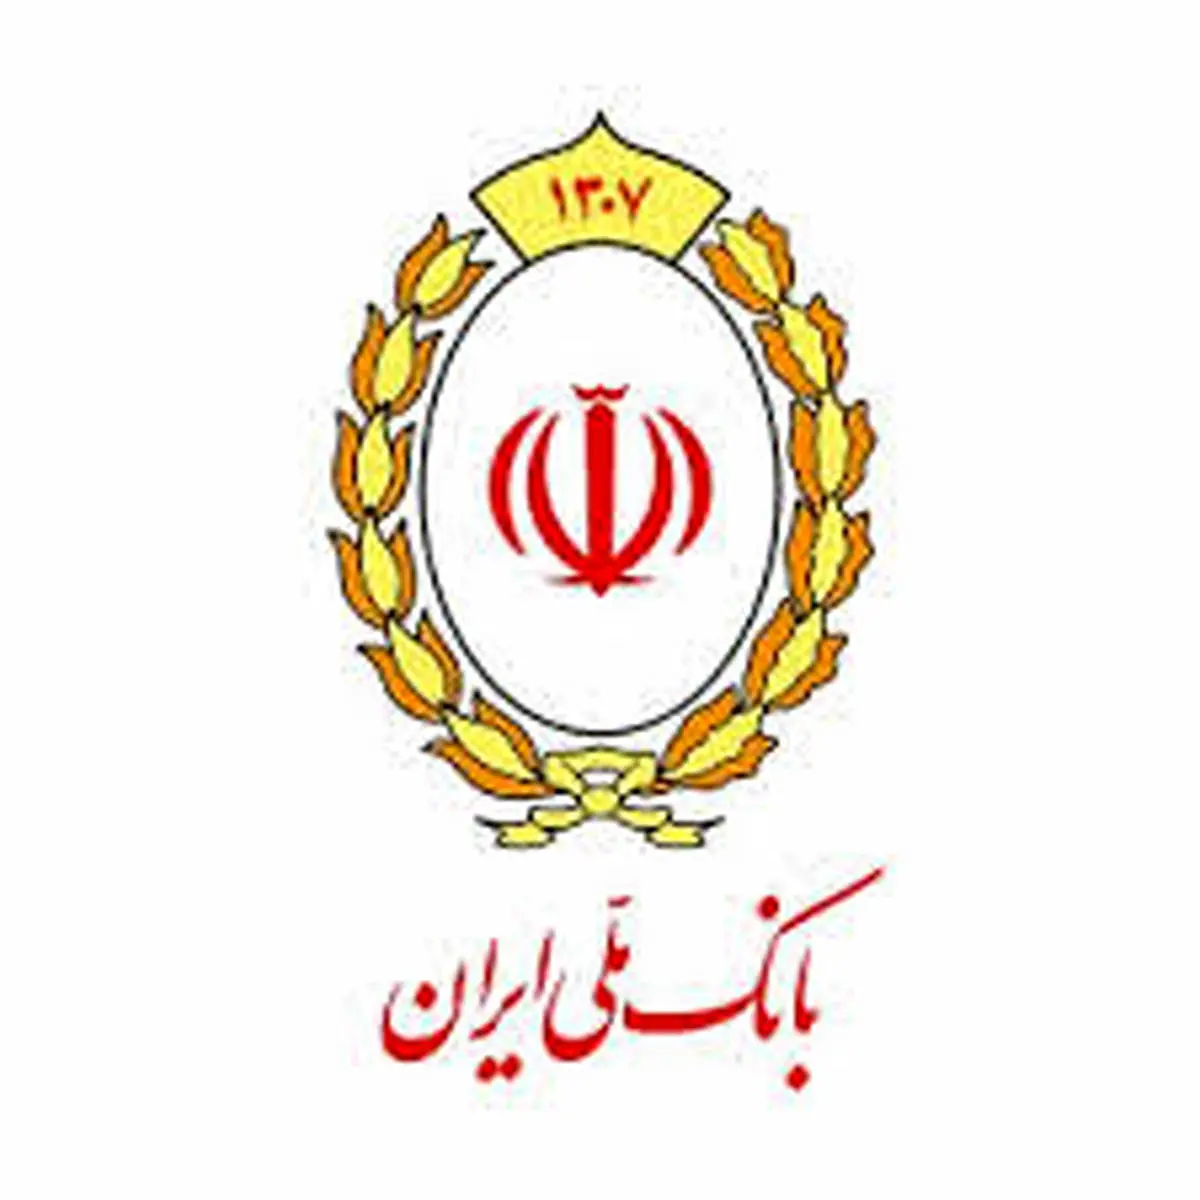 بانک ملی ایران حامی جشنواره ملی خلاقیت، نوآوری و کارآفرینی
